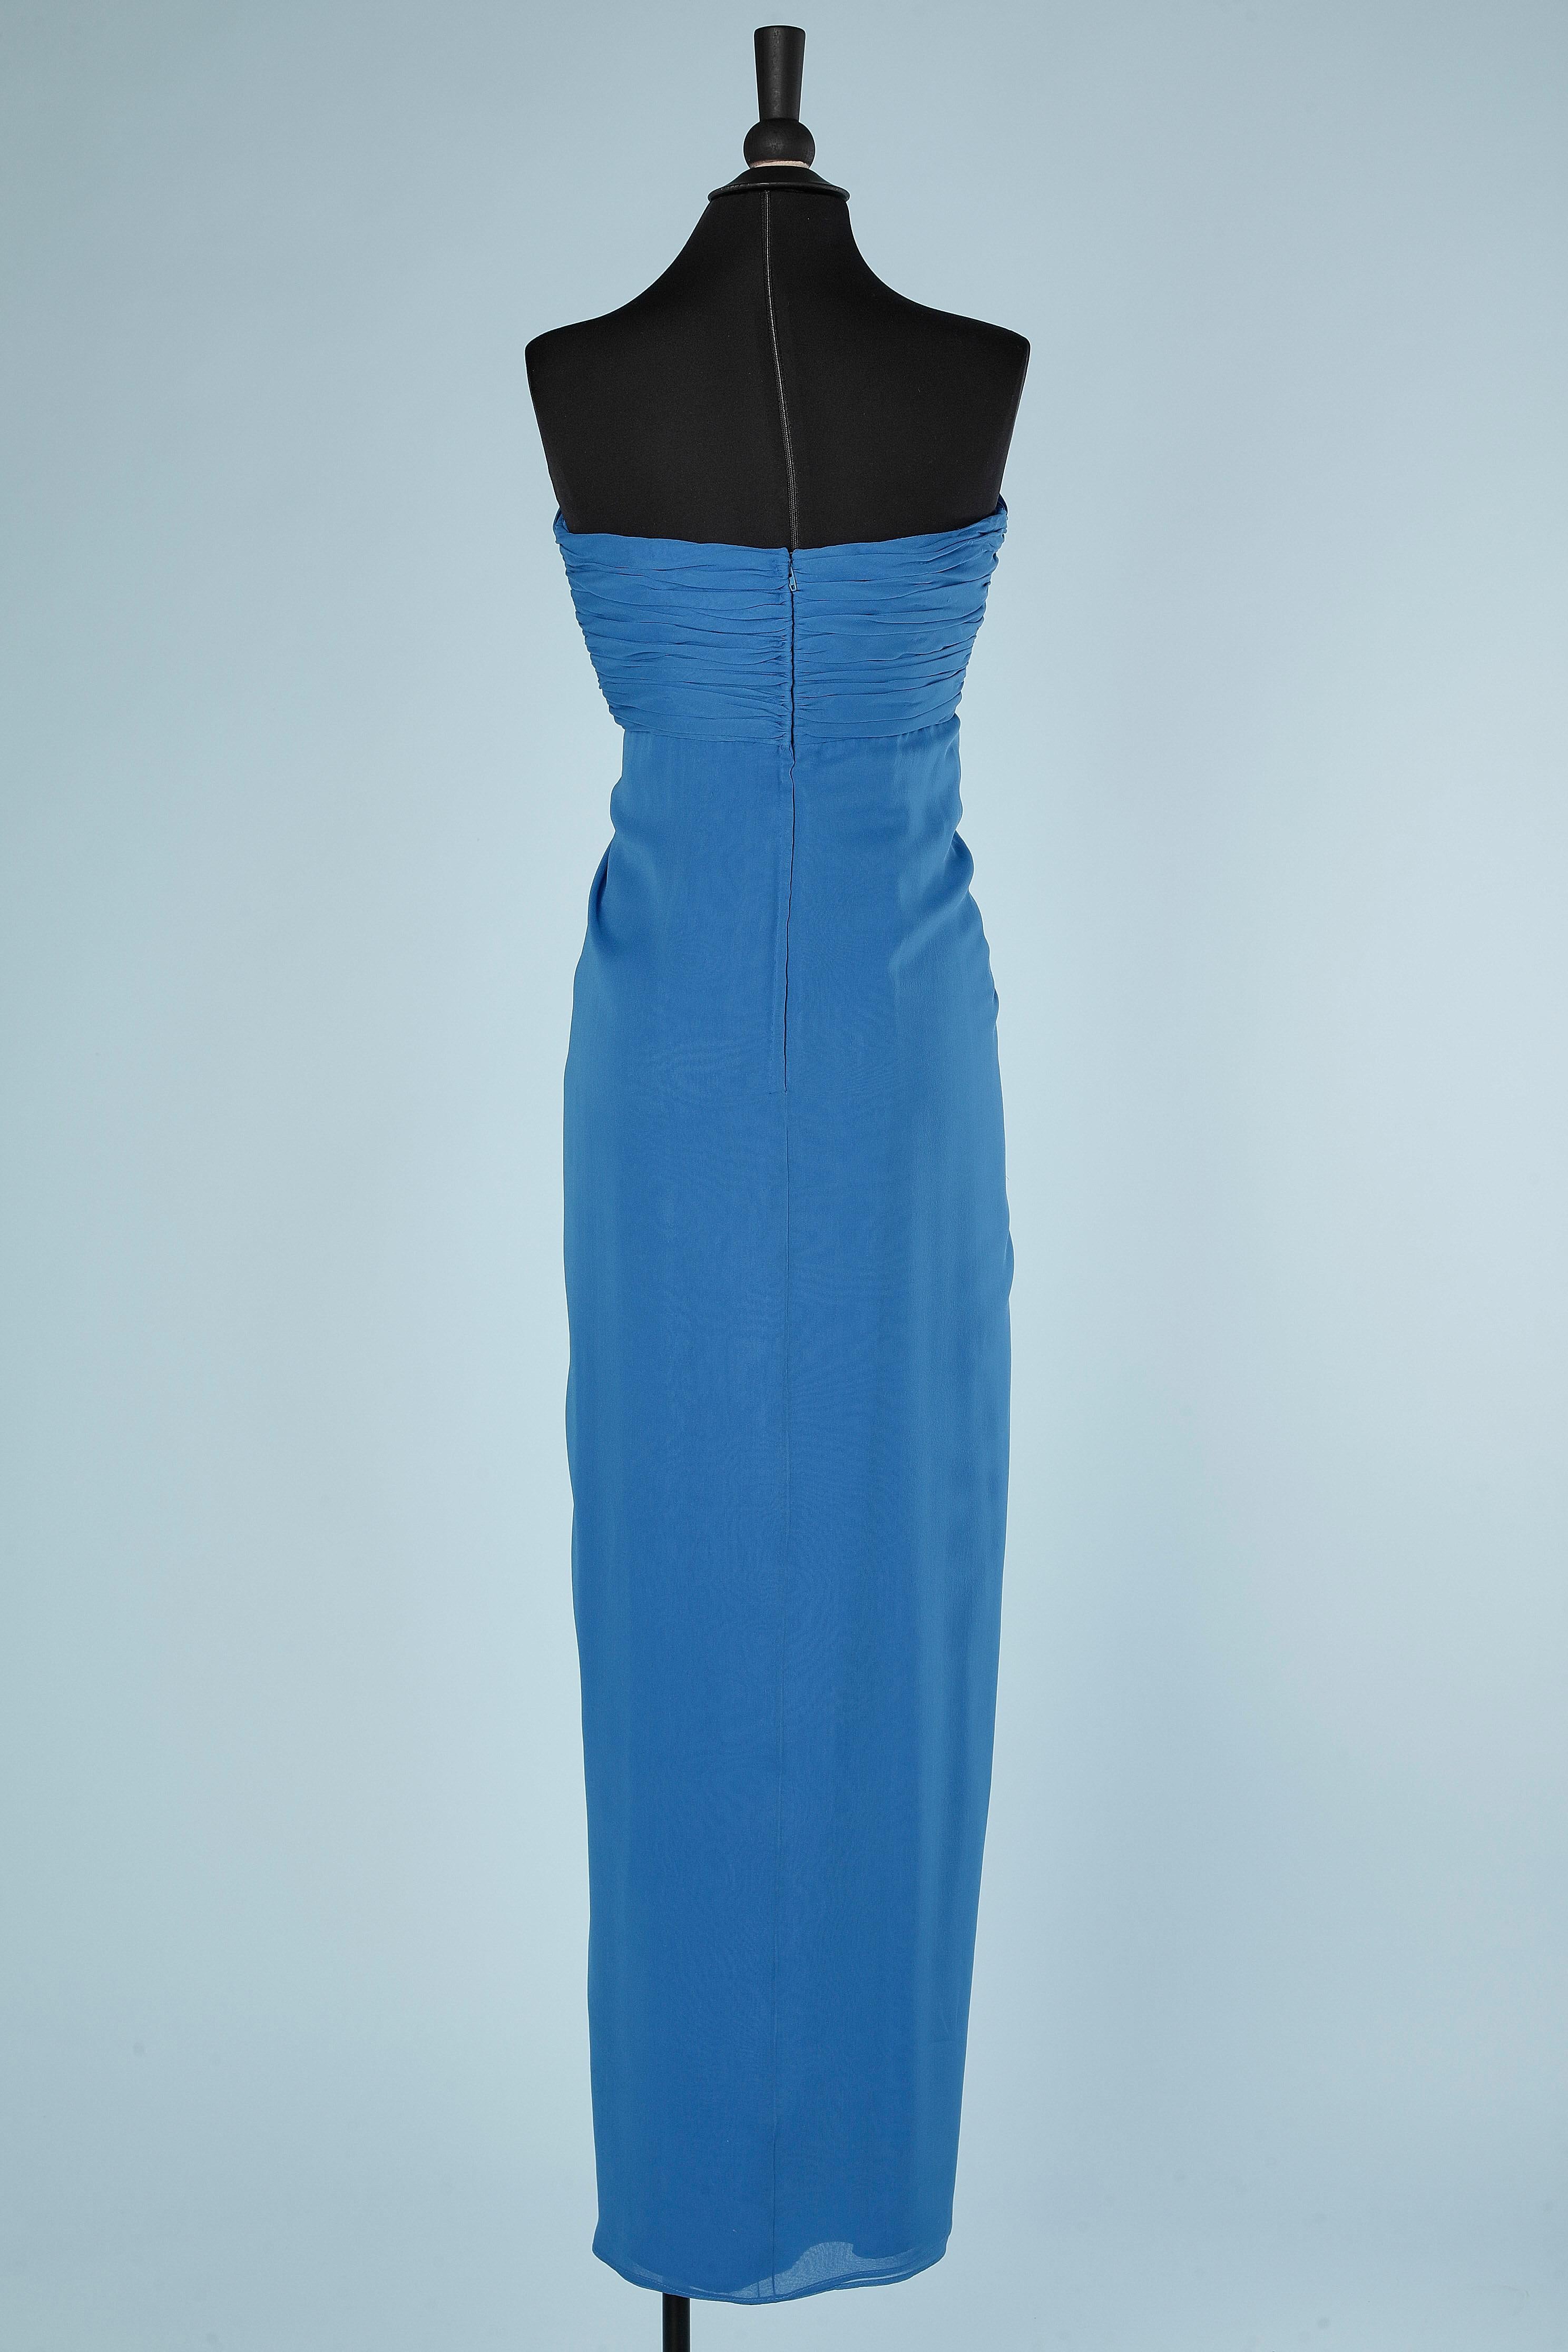 Long draped evening bustier dress in blue  silk chiffon Estévez  In Excellent Condition For Sale In Saint-Ouen-Sur-Seine, FR